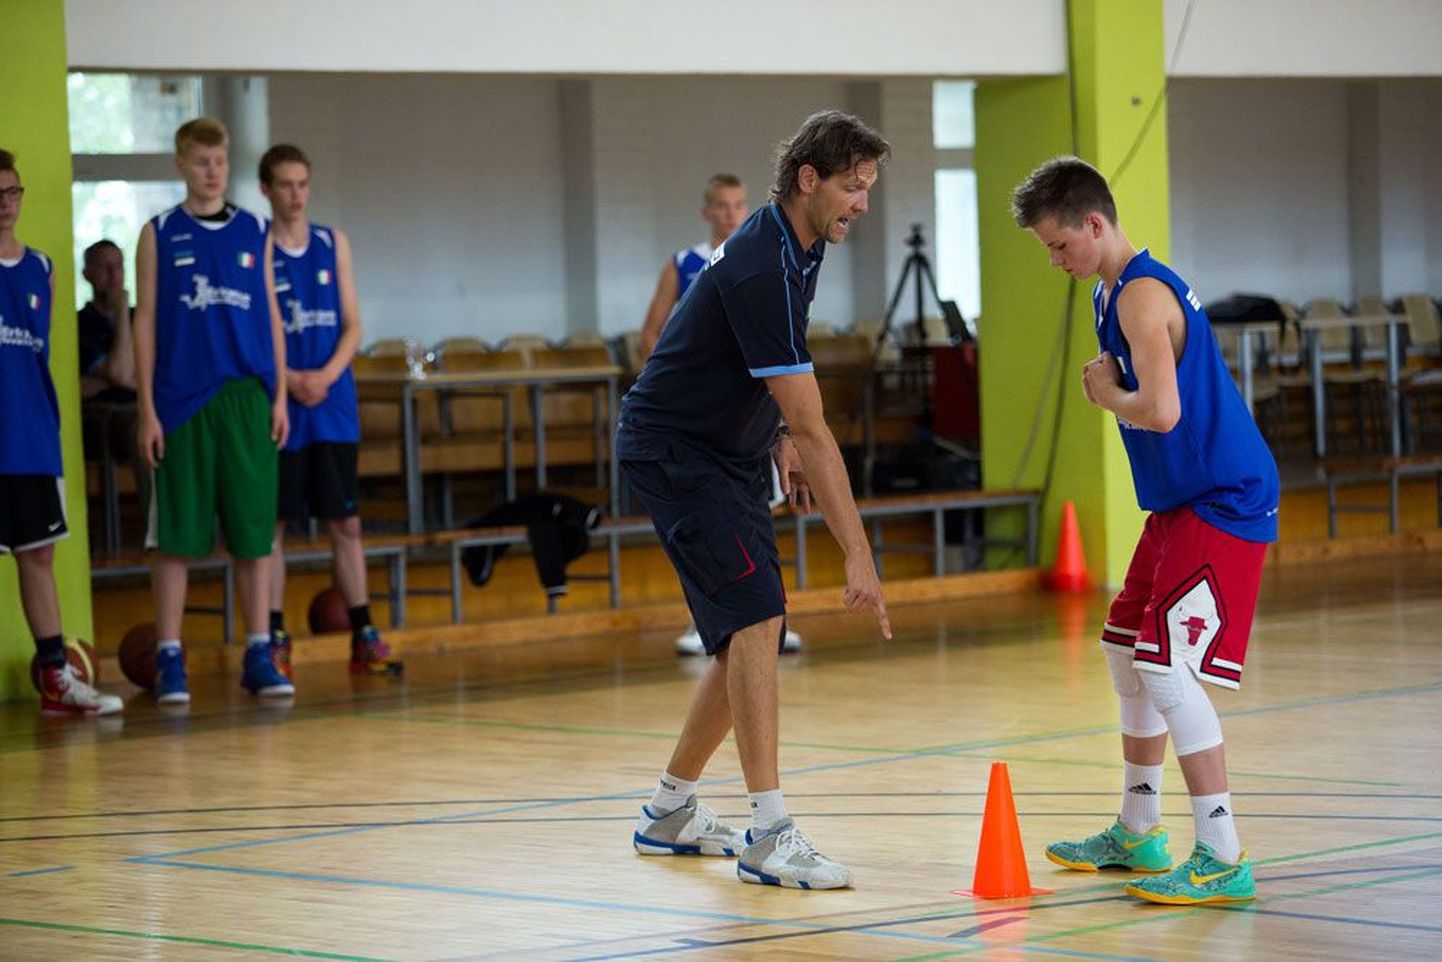 Итальянский тренер Роберто Касоли прошлым летом тренировал молодых эстонских баскетболистов в спортивном лагере в Винни.